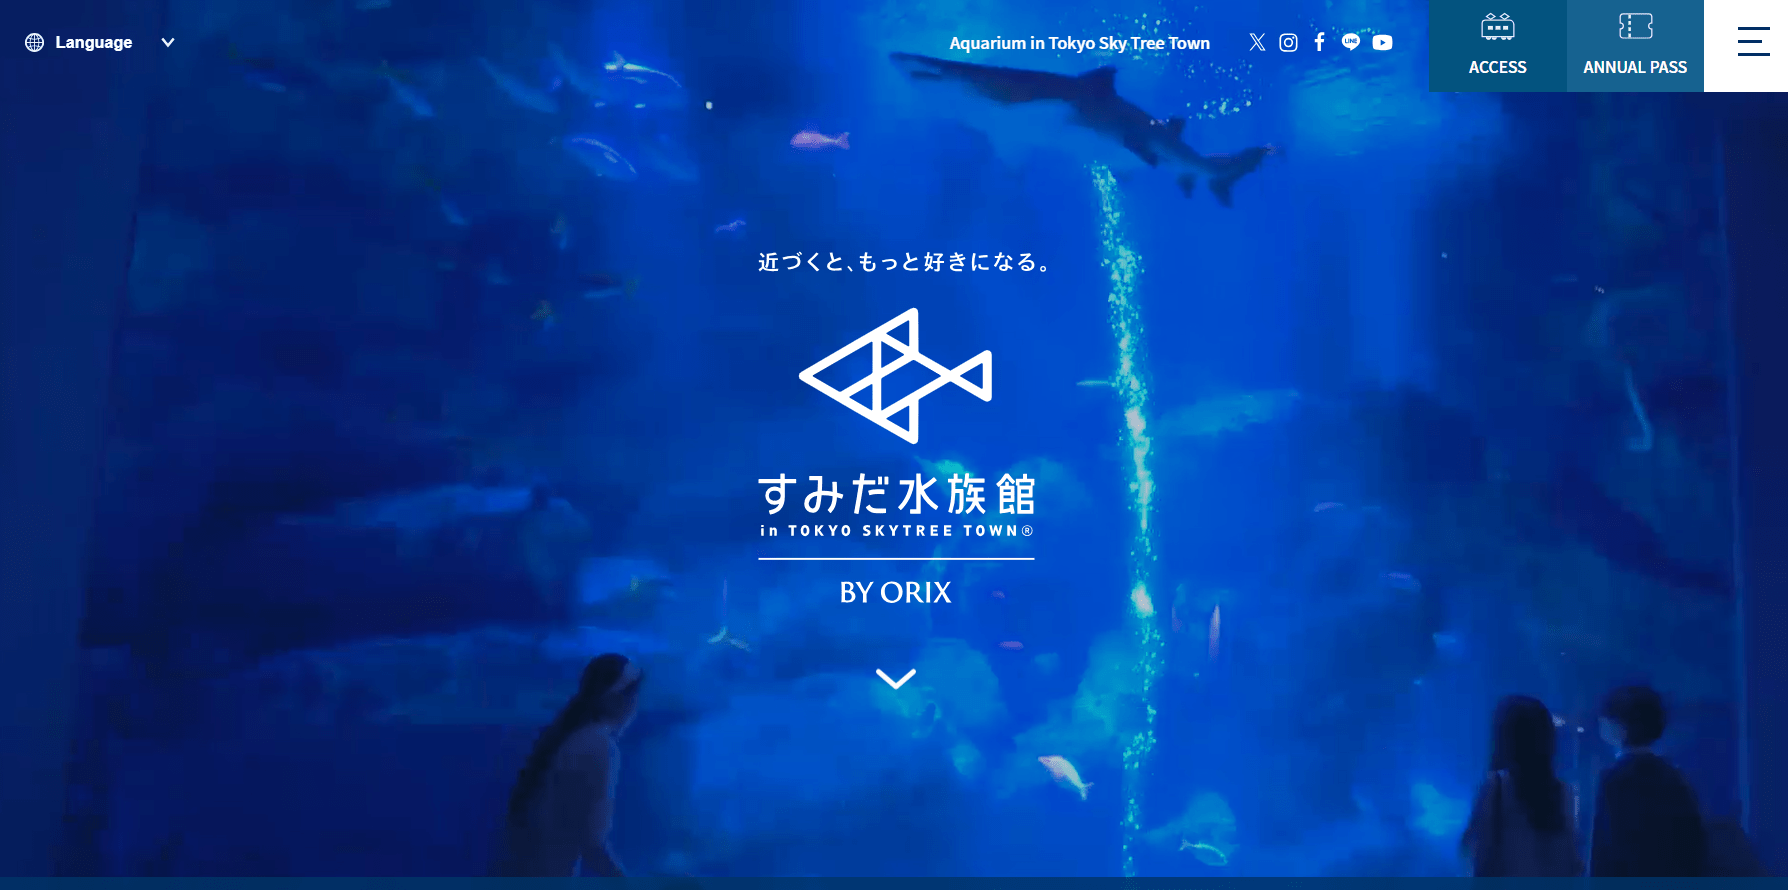 Sumida aquarium website